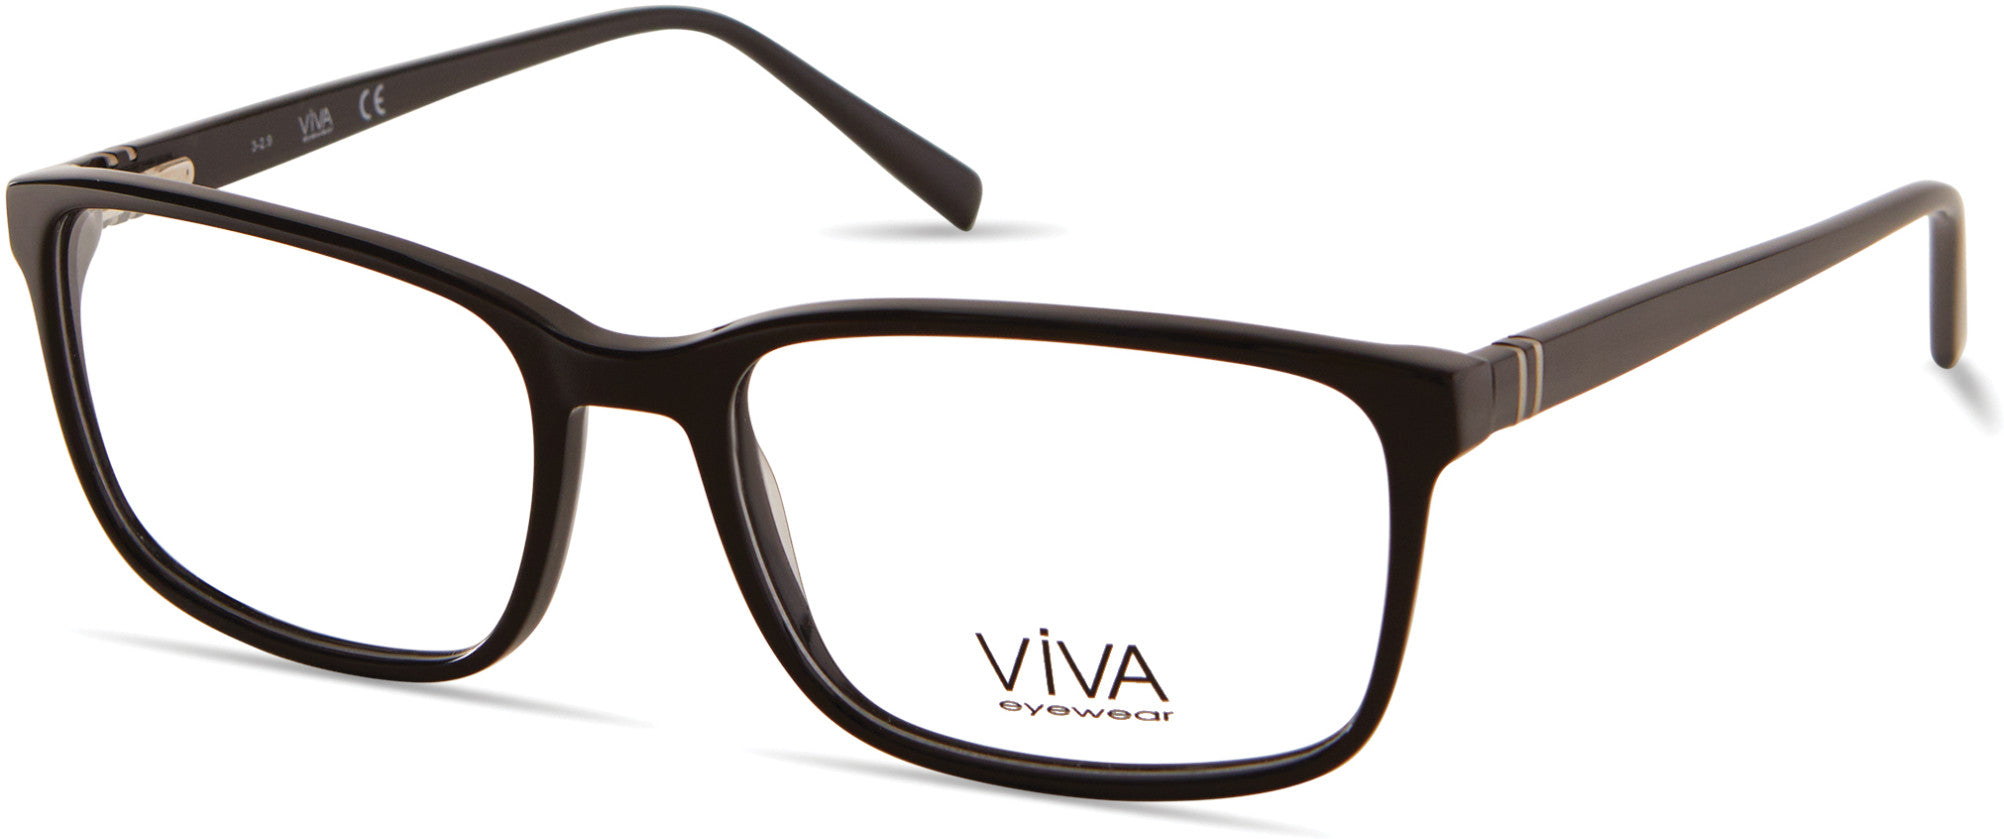 Viva VV4044 Rectangular Eyeglasses 001-001 - Shiny Black